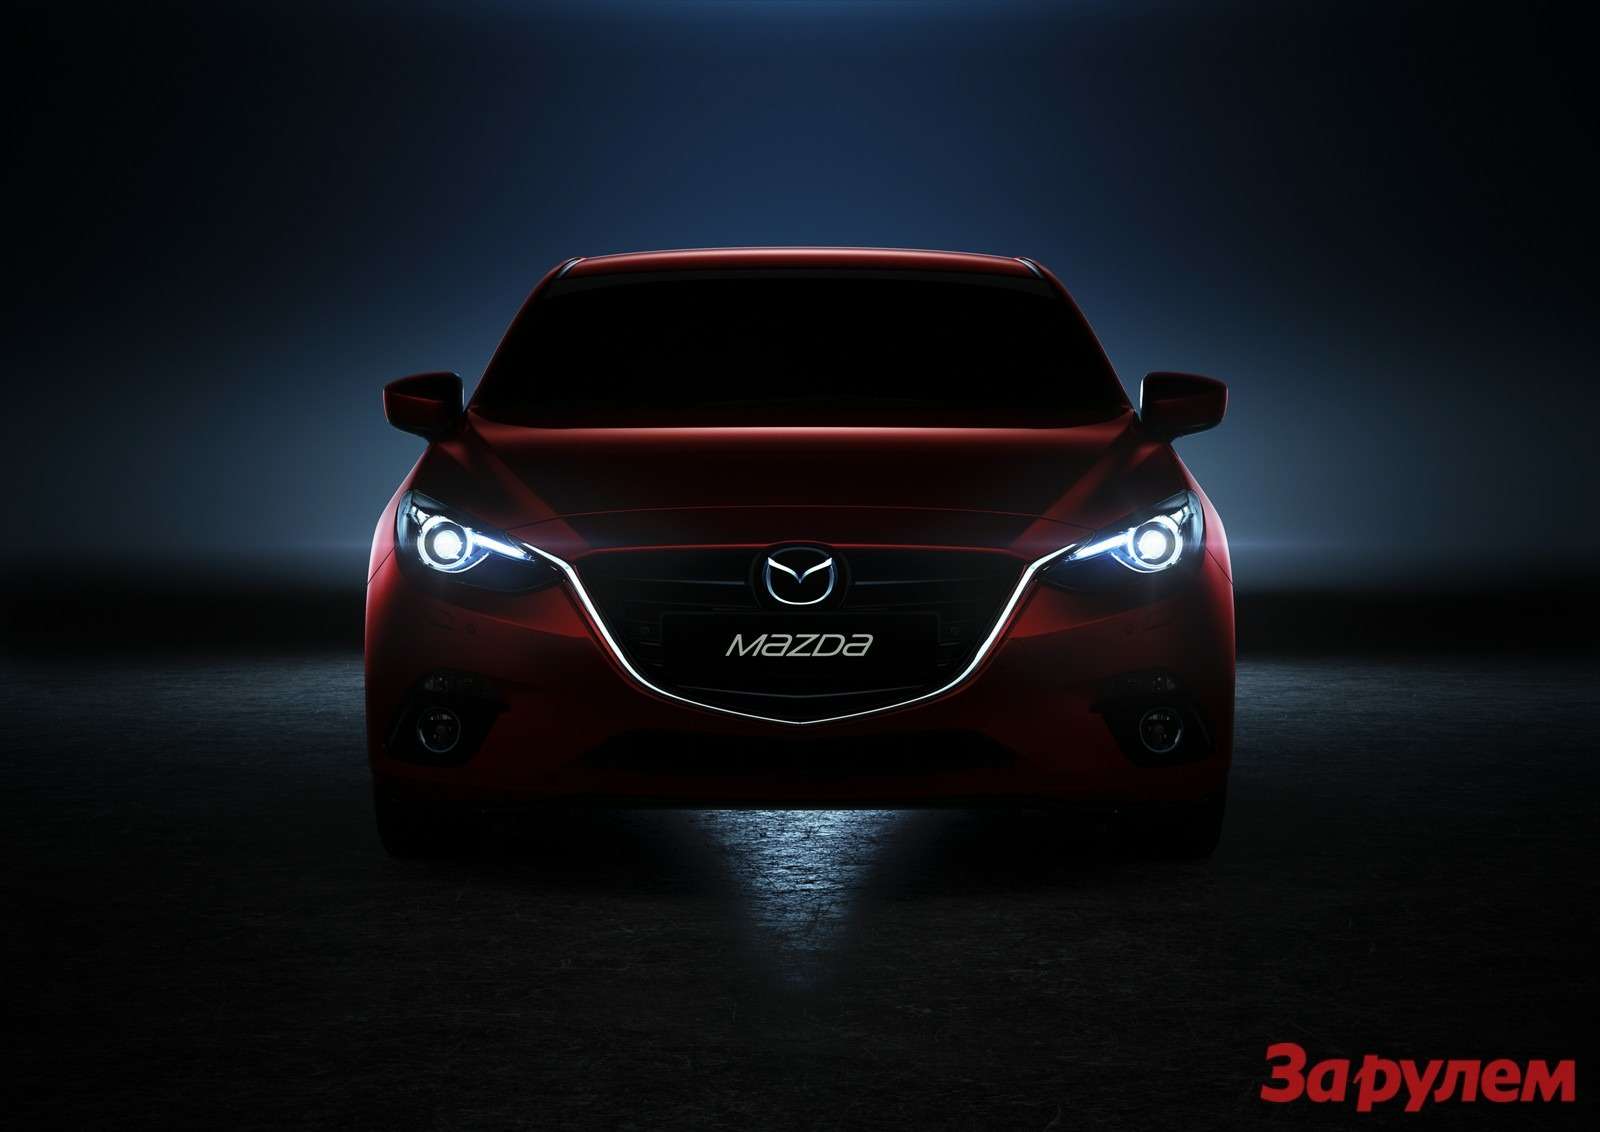 Mazda3 Hatchback 2013 detail 01 copy